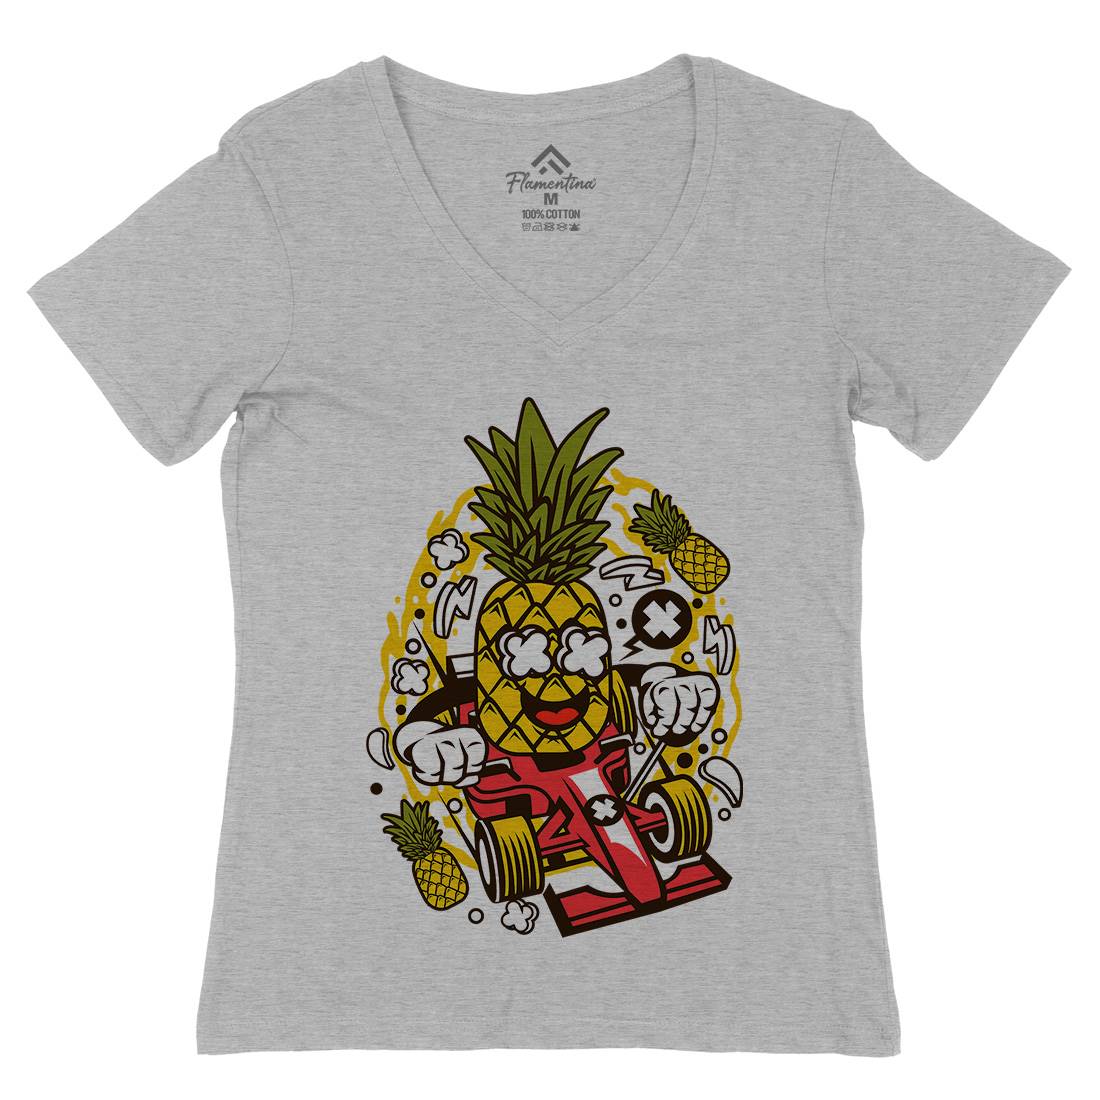 Pineapple Formula Racer Womens Organic V-Neck T-Shirt Sport C606